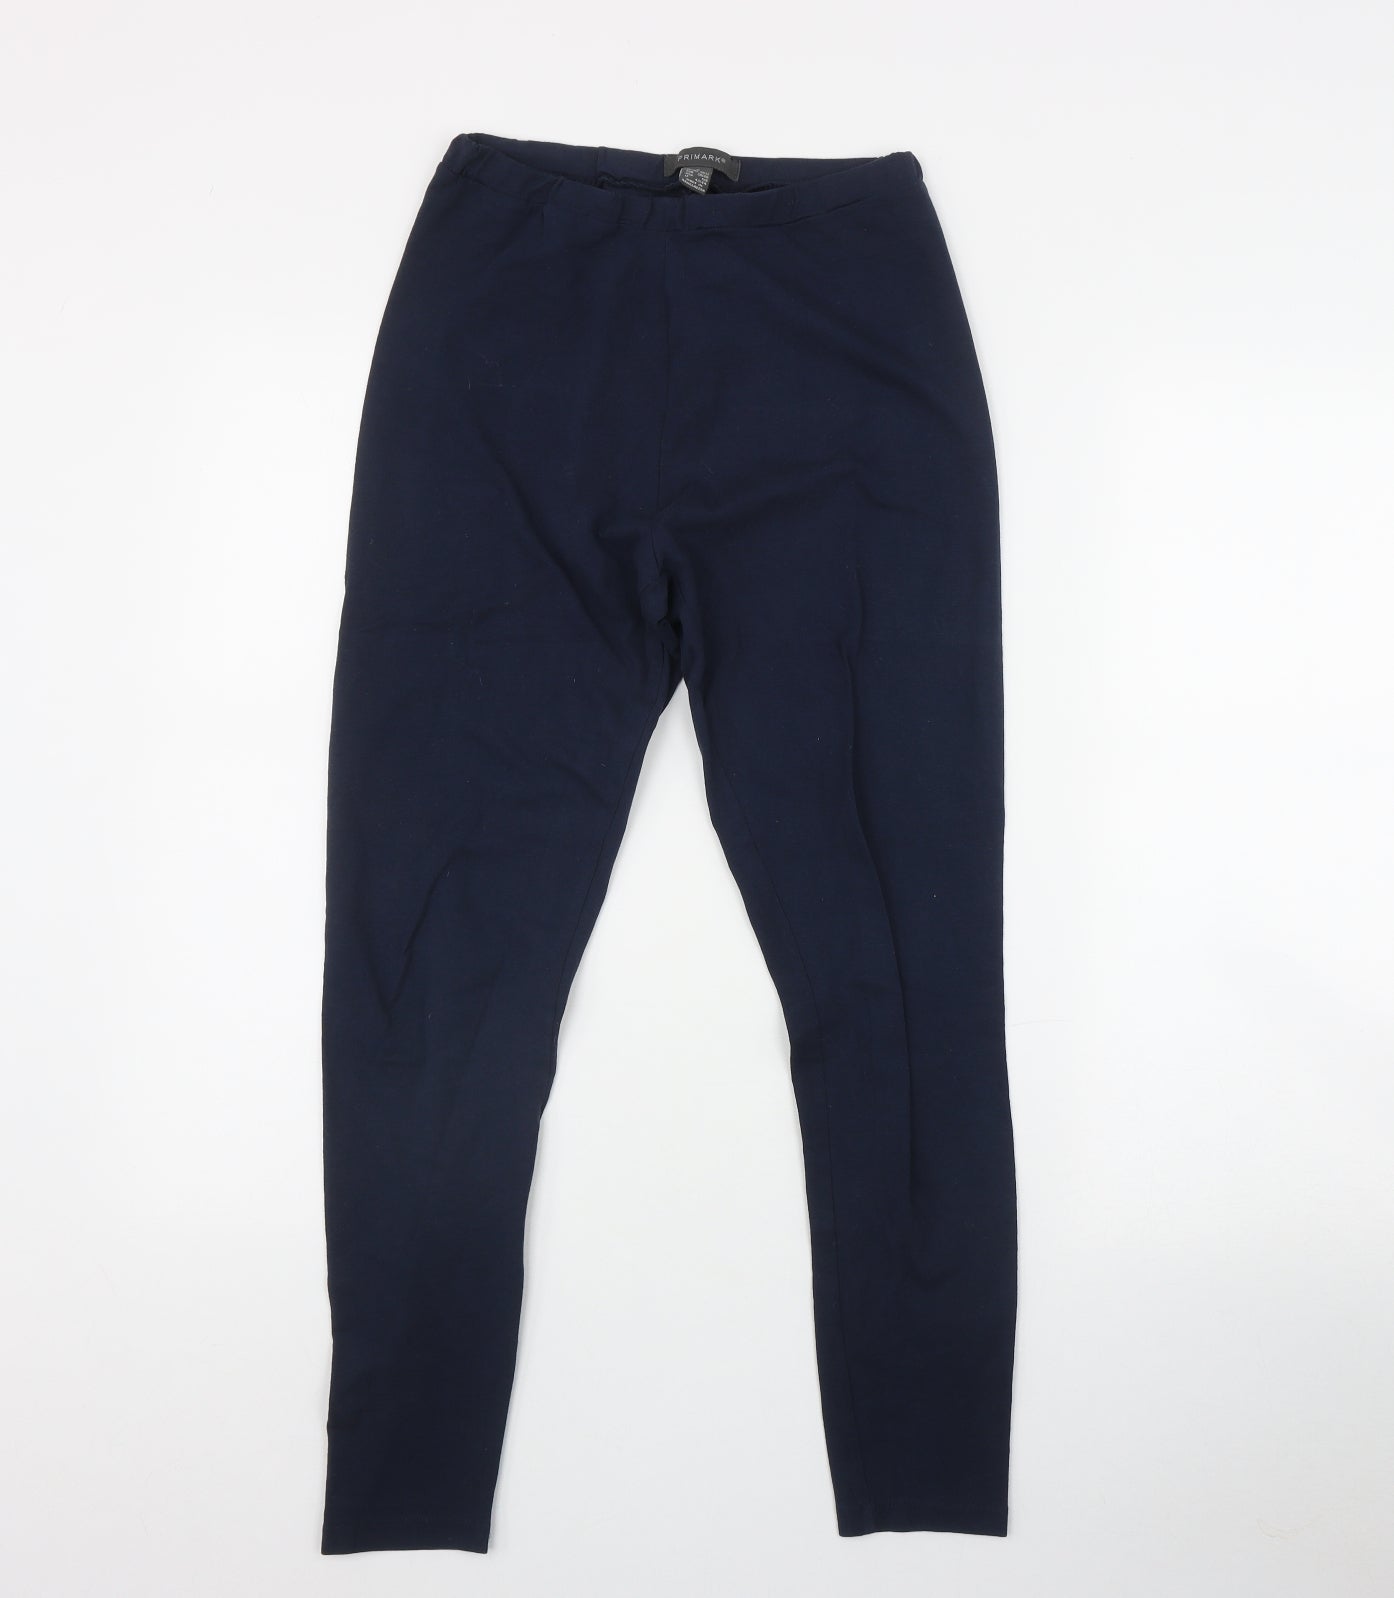 Primark Womens Blue Cotton Jogger Leggings Size 10 L27 in – Preworn Ltd